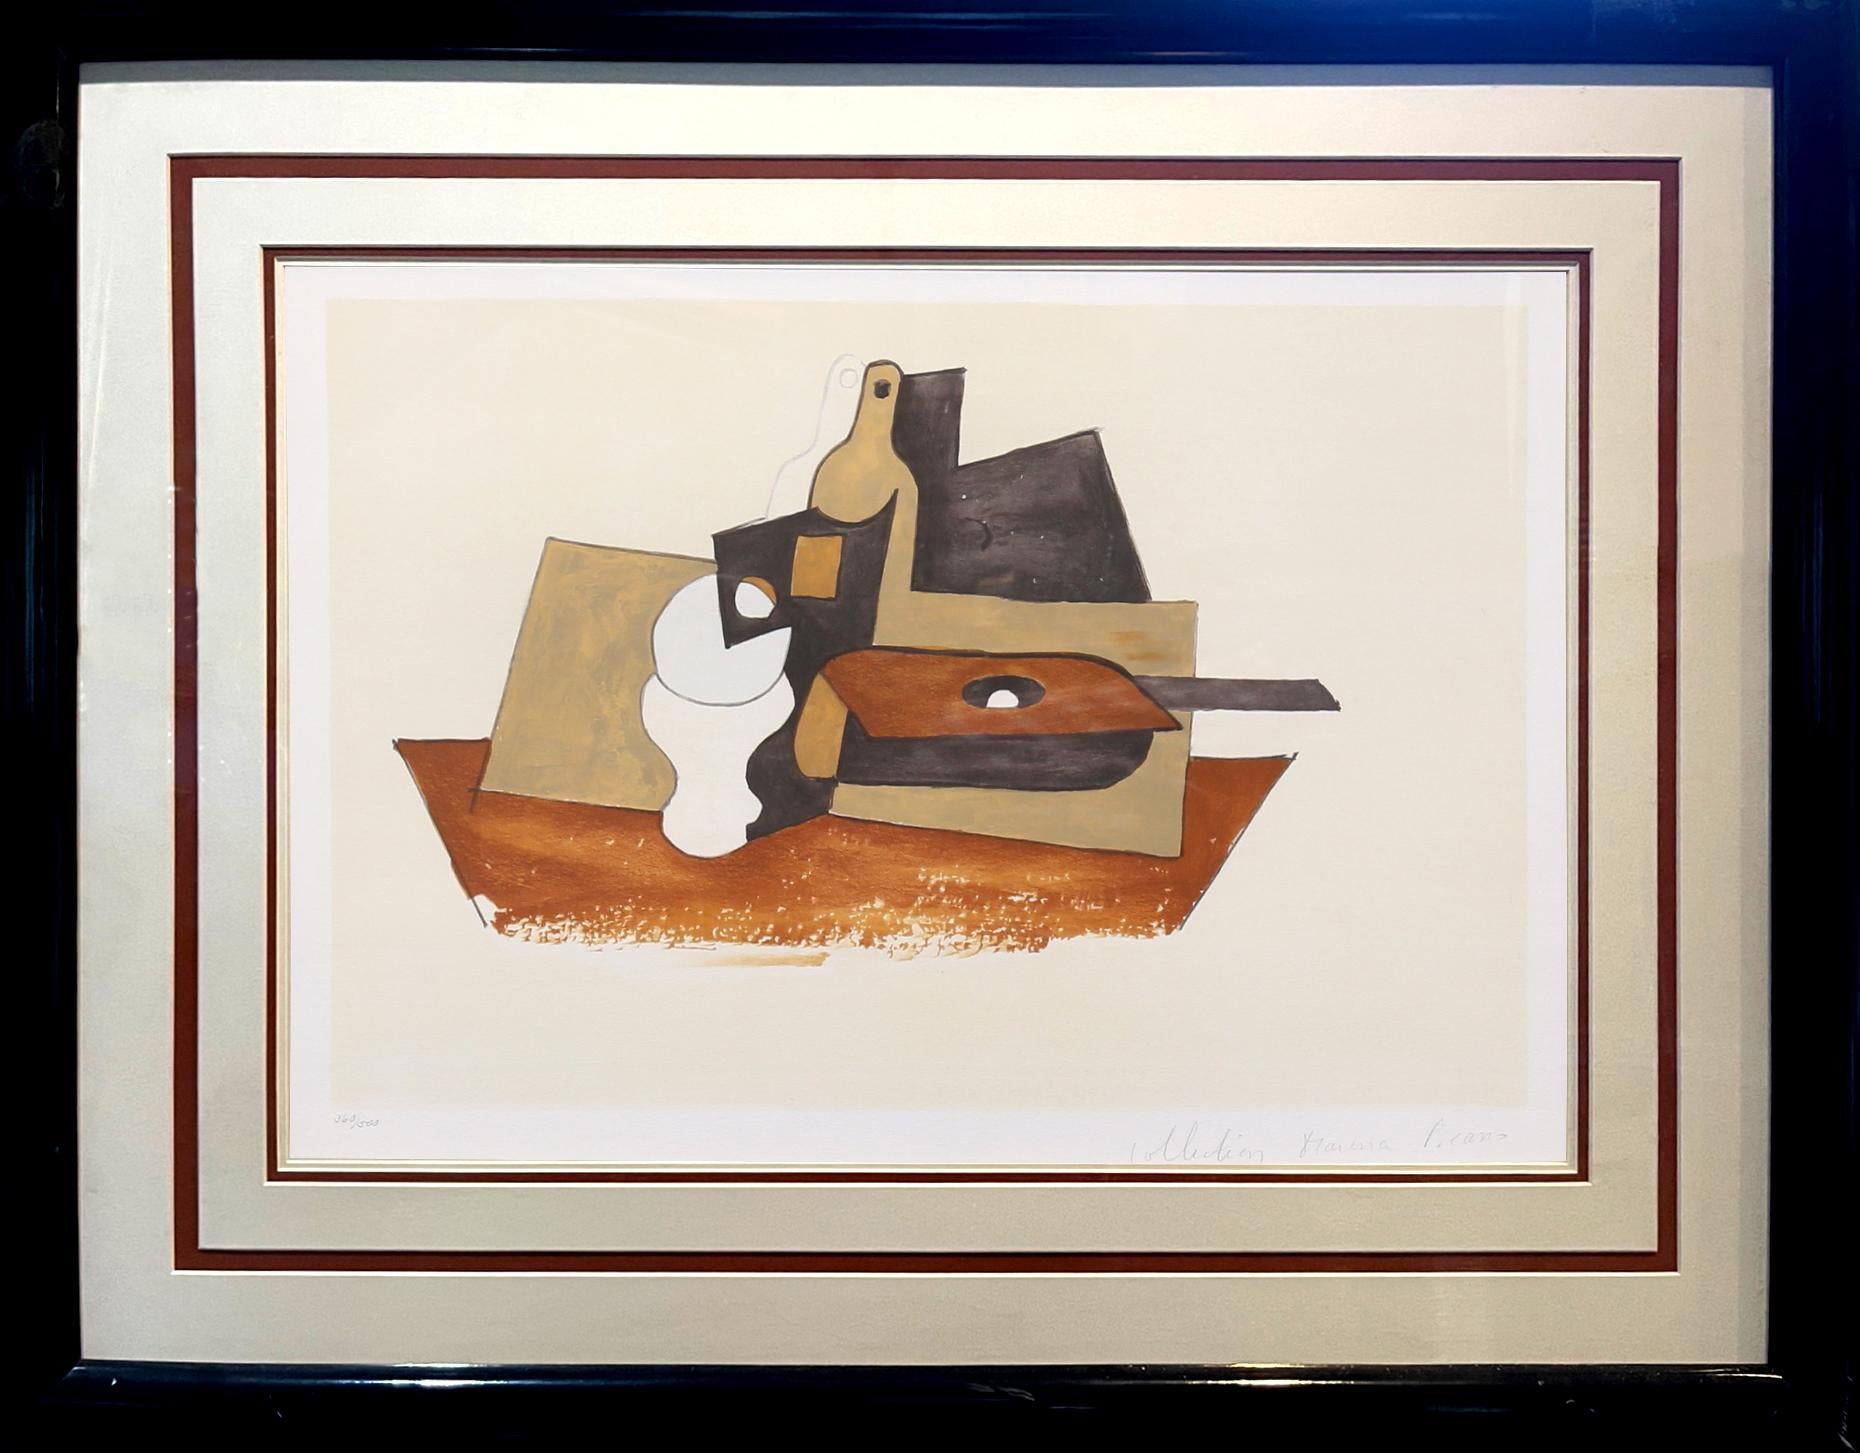 Dieses kubistische Stillleben von Pablo Picasso zeigt zwei häufige Motive des Künstlers, eine Glasflasche und eine Gitarre, die in mehreren Schichten angeordnet und von mehreren rechteckigen Formen begleitet werden. Das in neutralen Tönen gehaltene